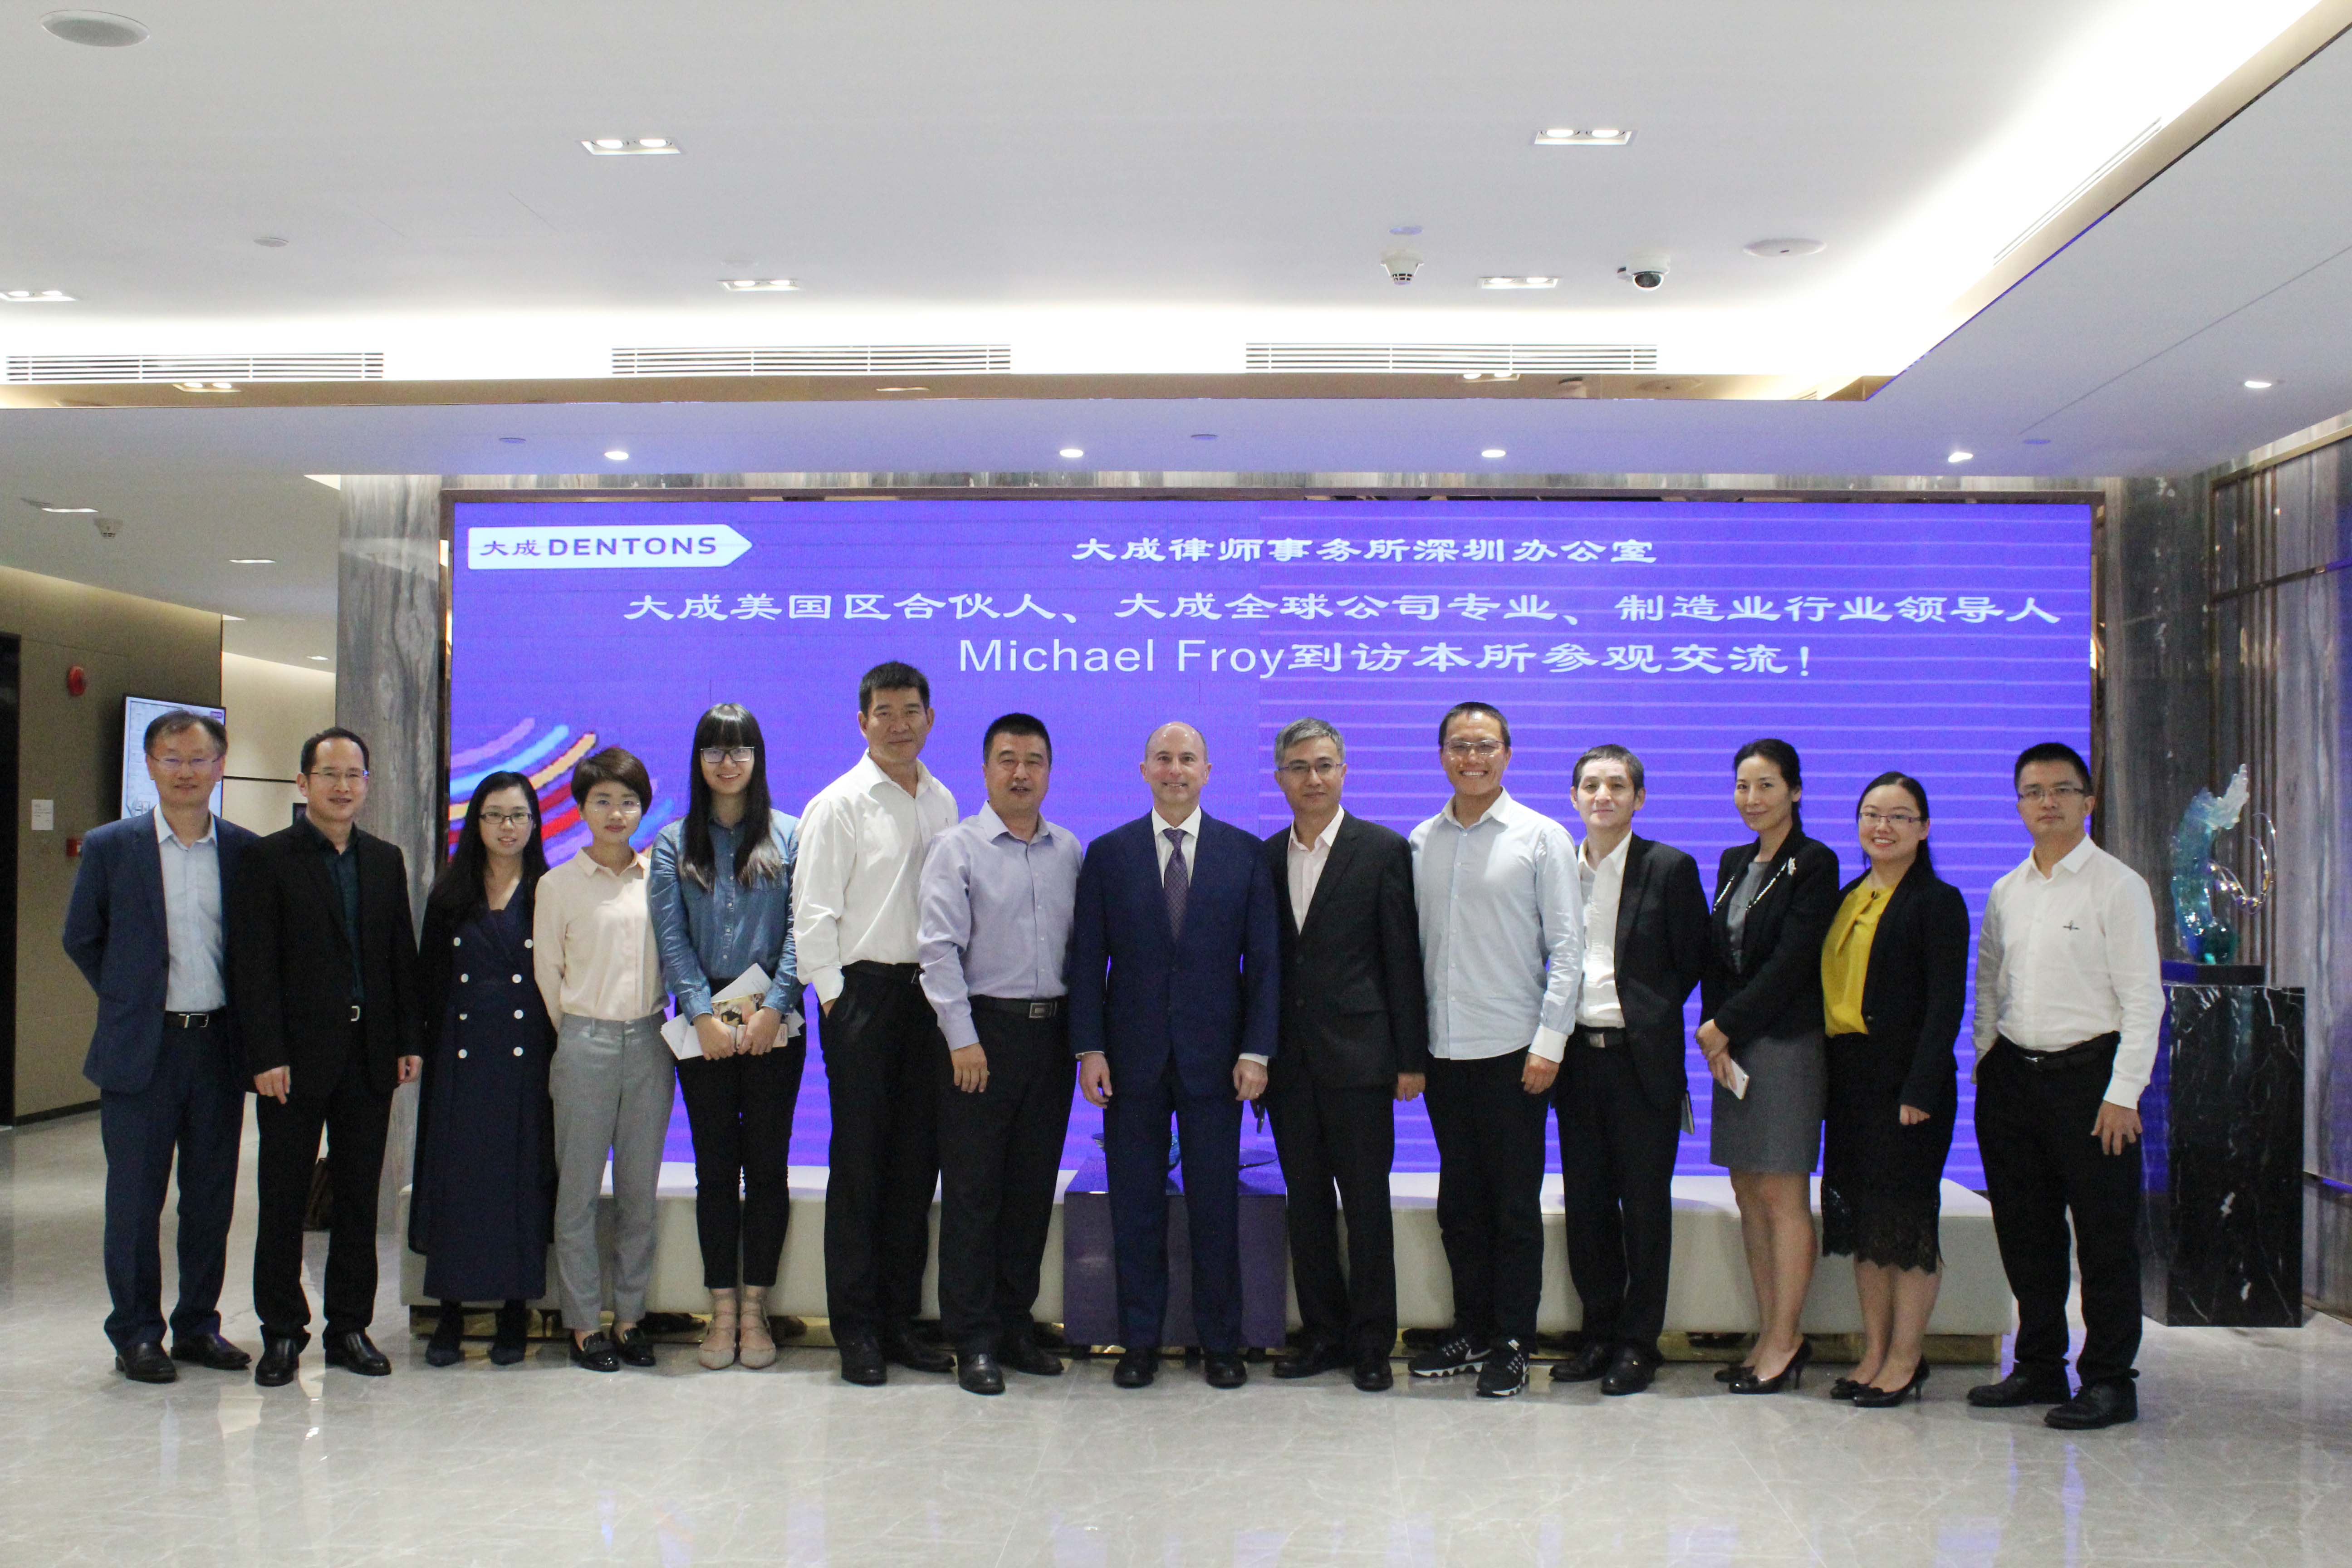 大成全球公司专业、制造业行业领导人Michael Froy到访深圳办公室